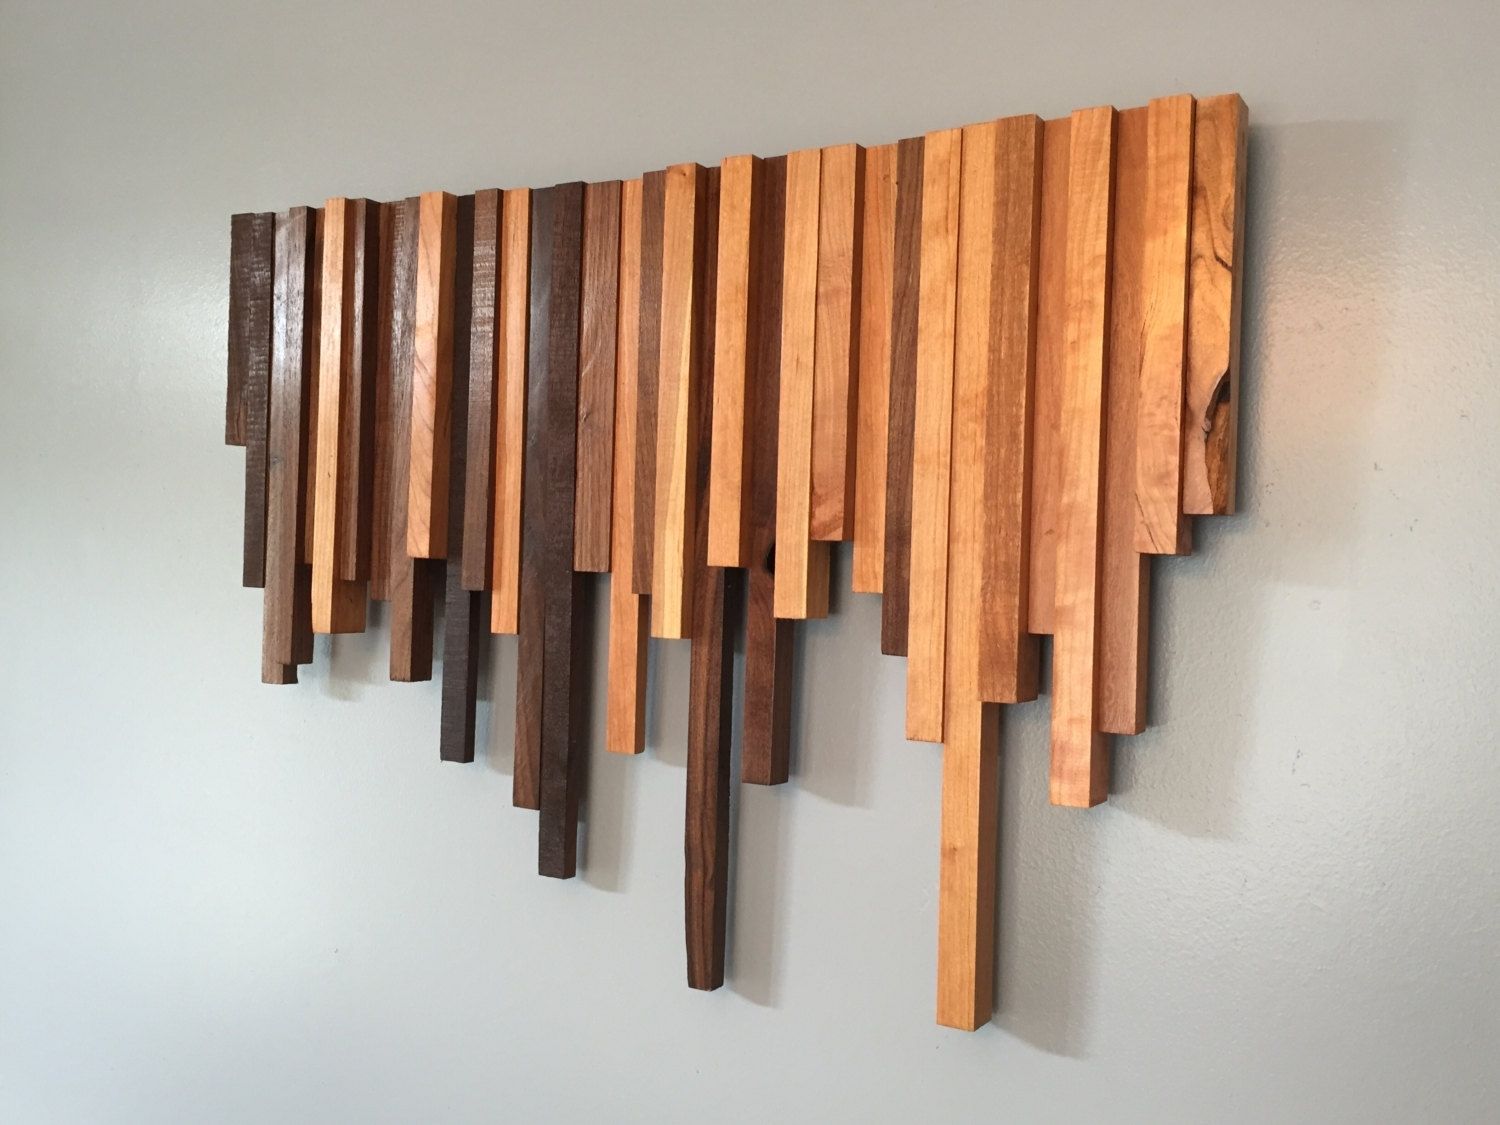 Stylish Wood Wall Art Decor | Jeffsbakery Basement & Mattress With Wood Wall Art (View 4 of 20)